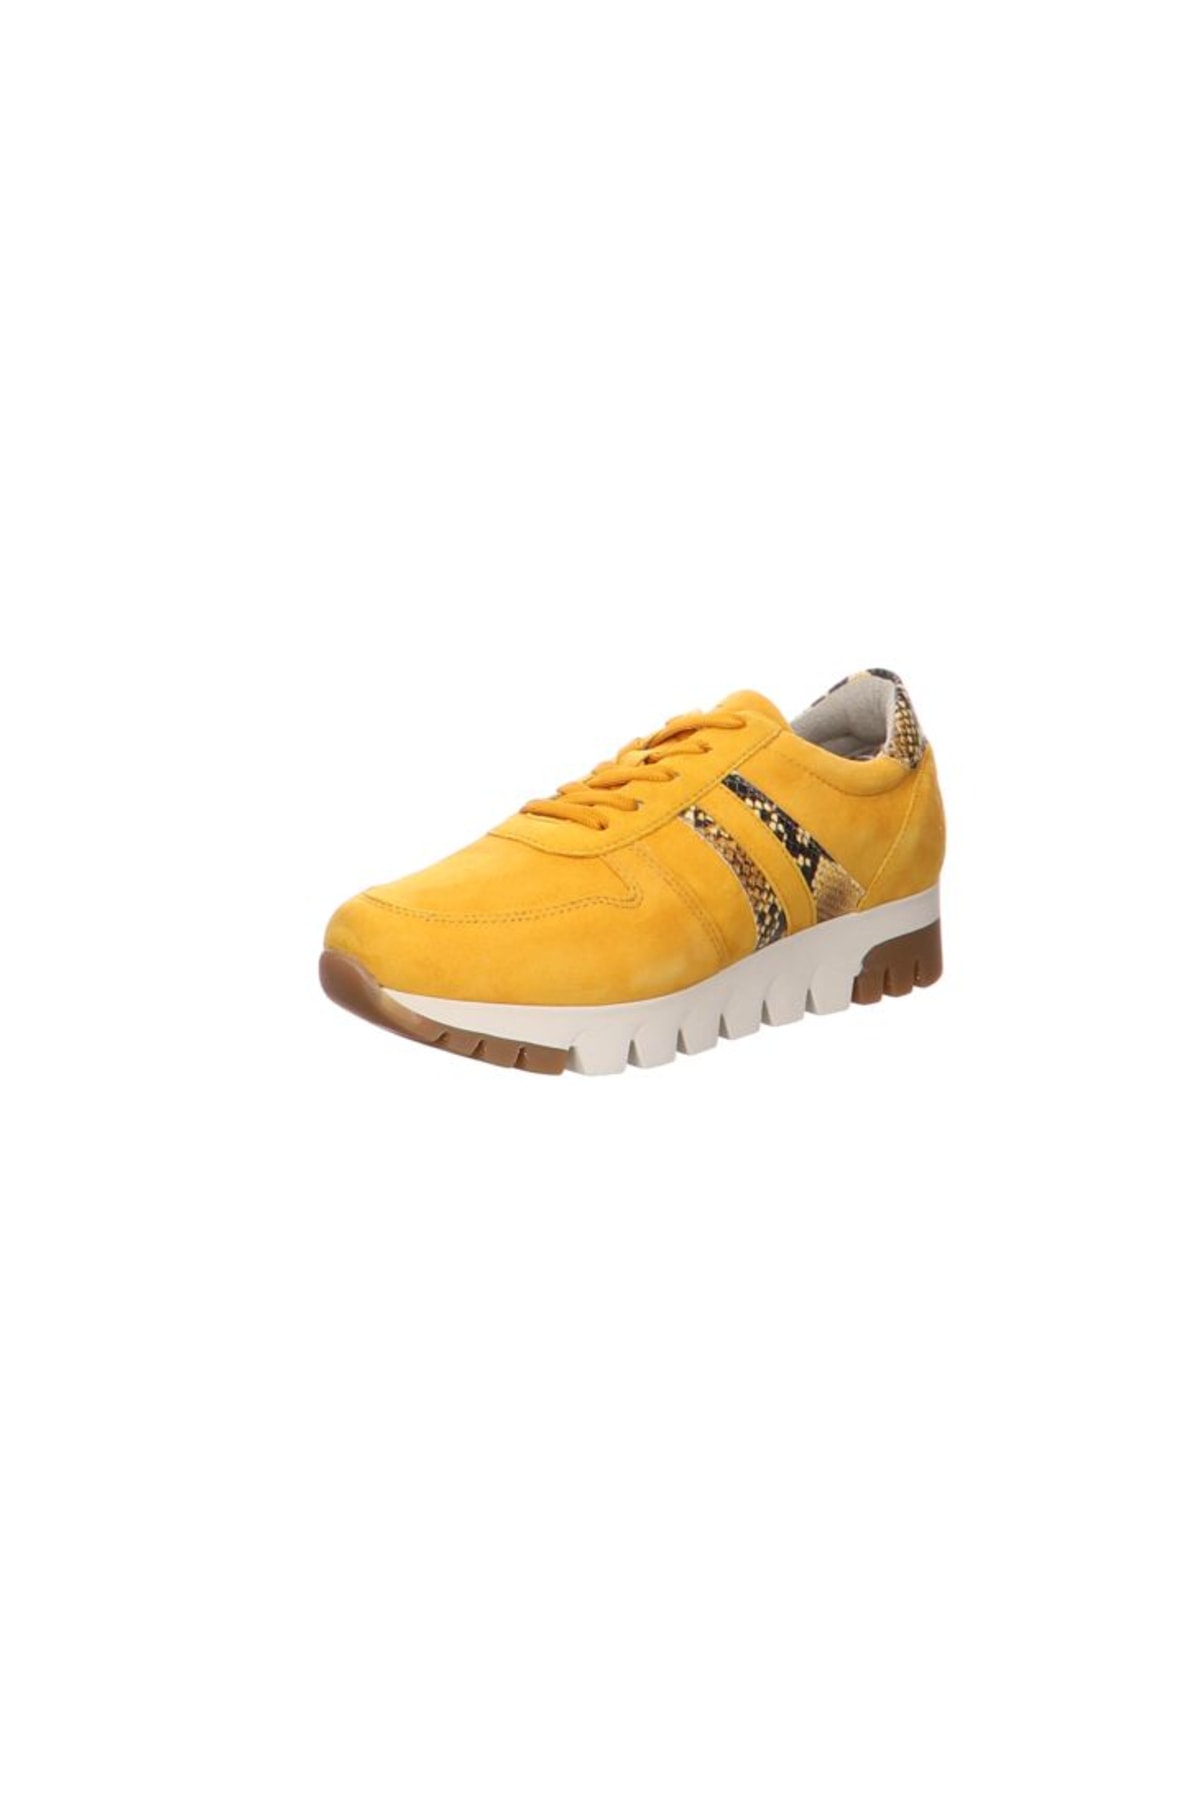 Tamaris Sneaker Gelb Flacher Absatz Fast ausverkauft